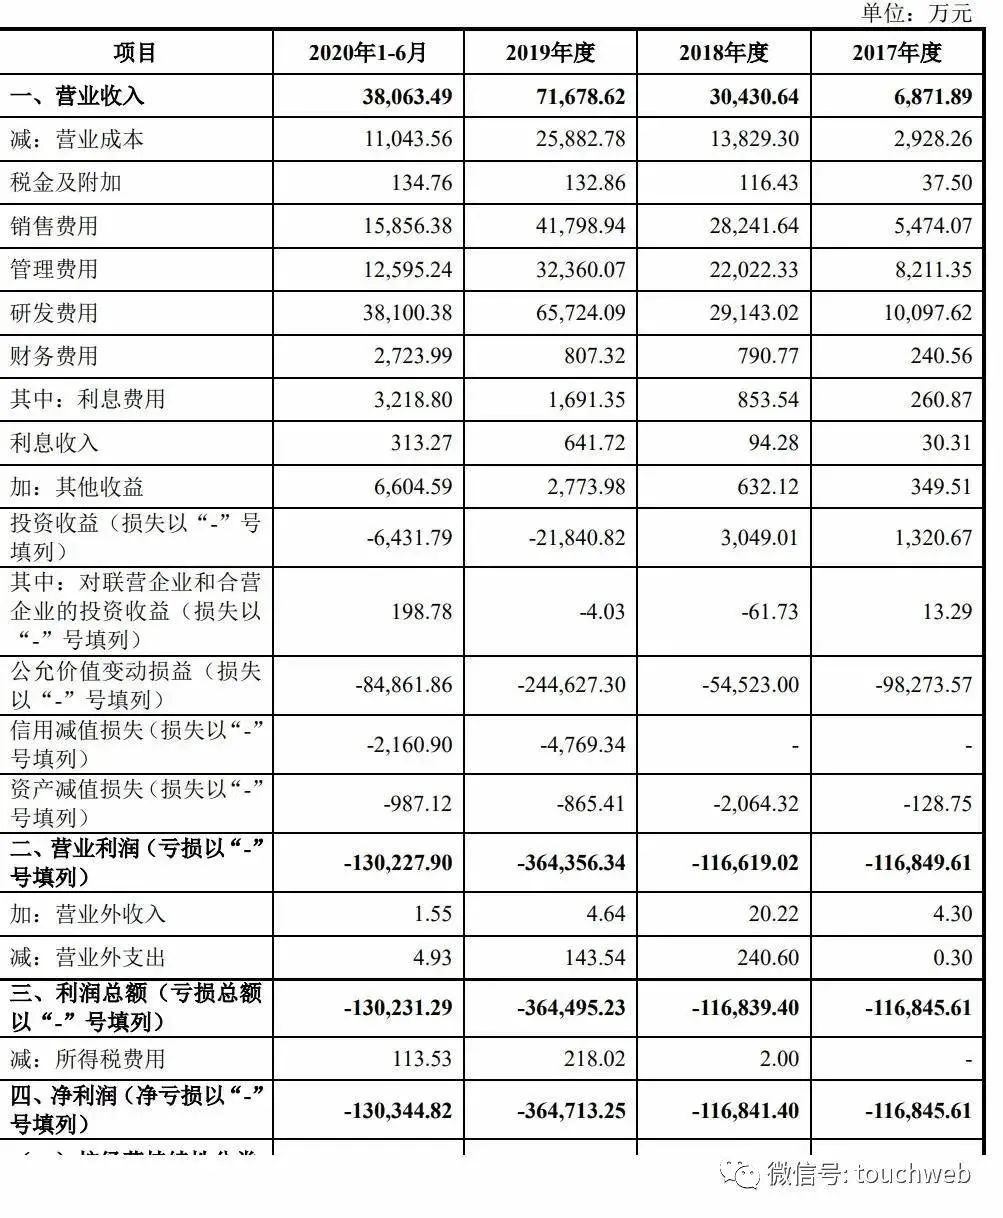 依图2017年、2018年、2019年运营亏损分别为11.68亿元、11.66亿元、36.43亿元。